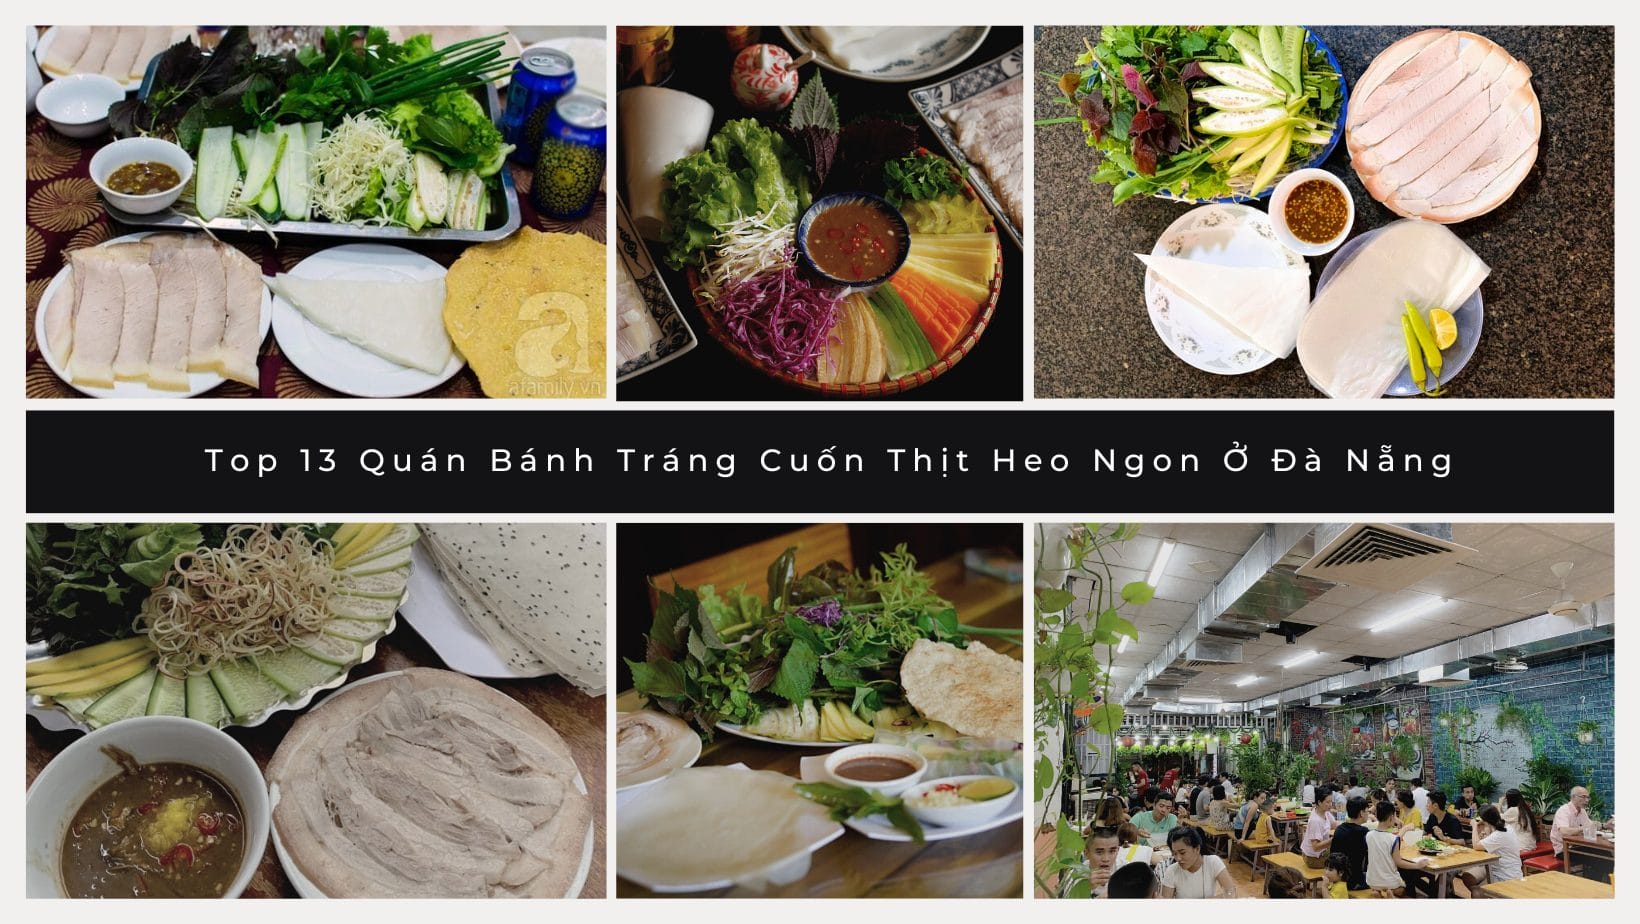 Top 13 Quán Bánh Tráng Cuốn Thịt Heo Ngon Ở Đà Nẵng